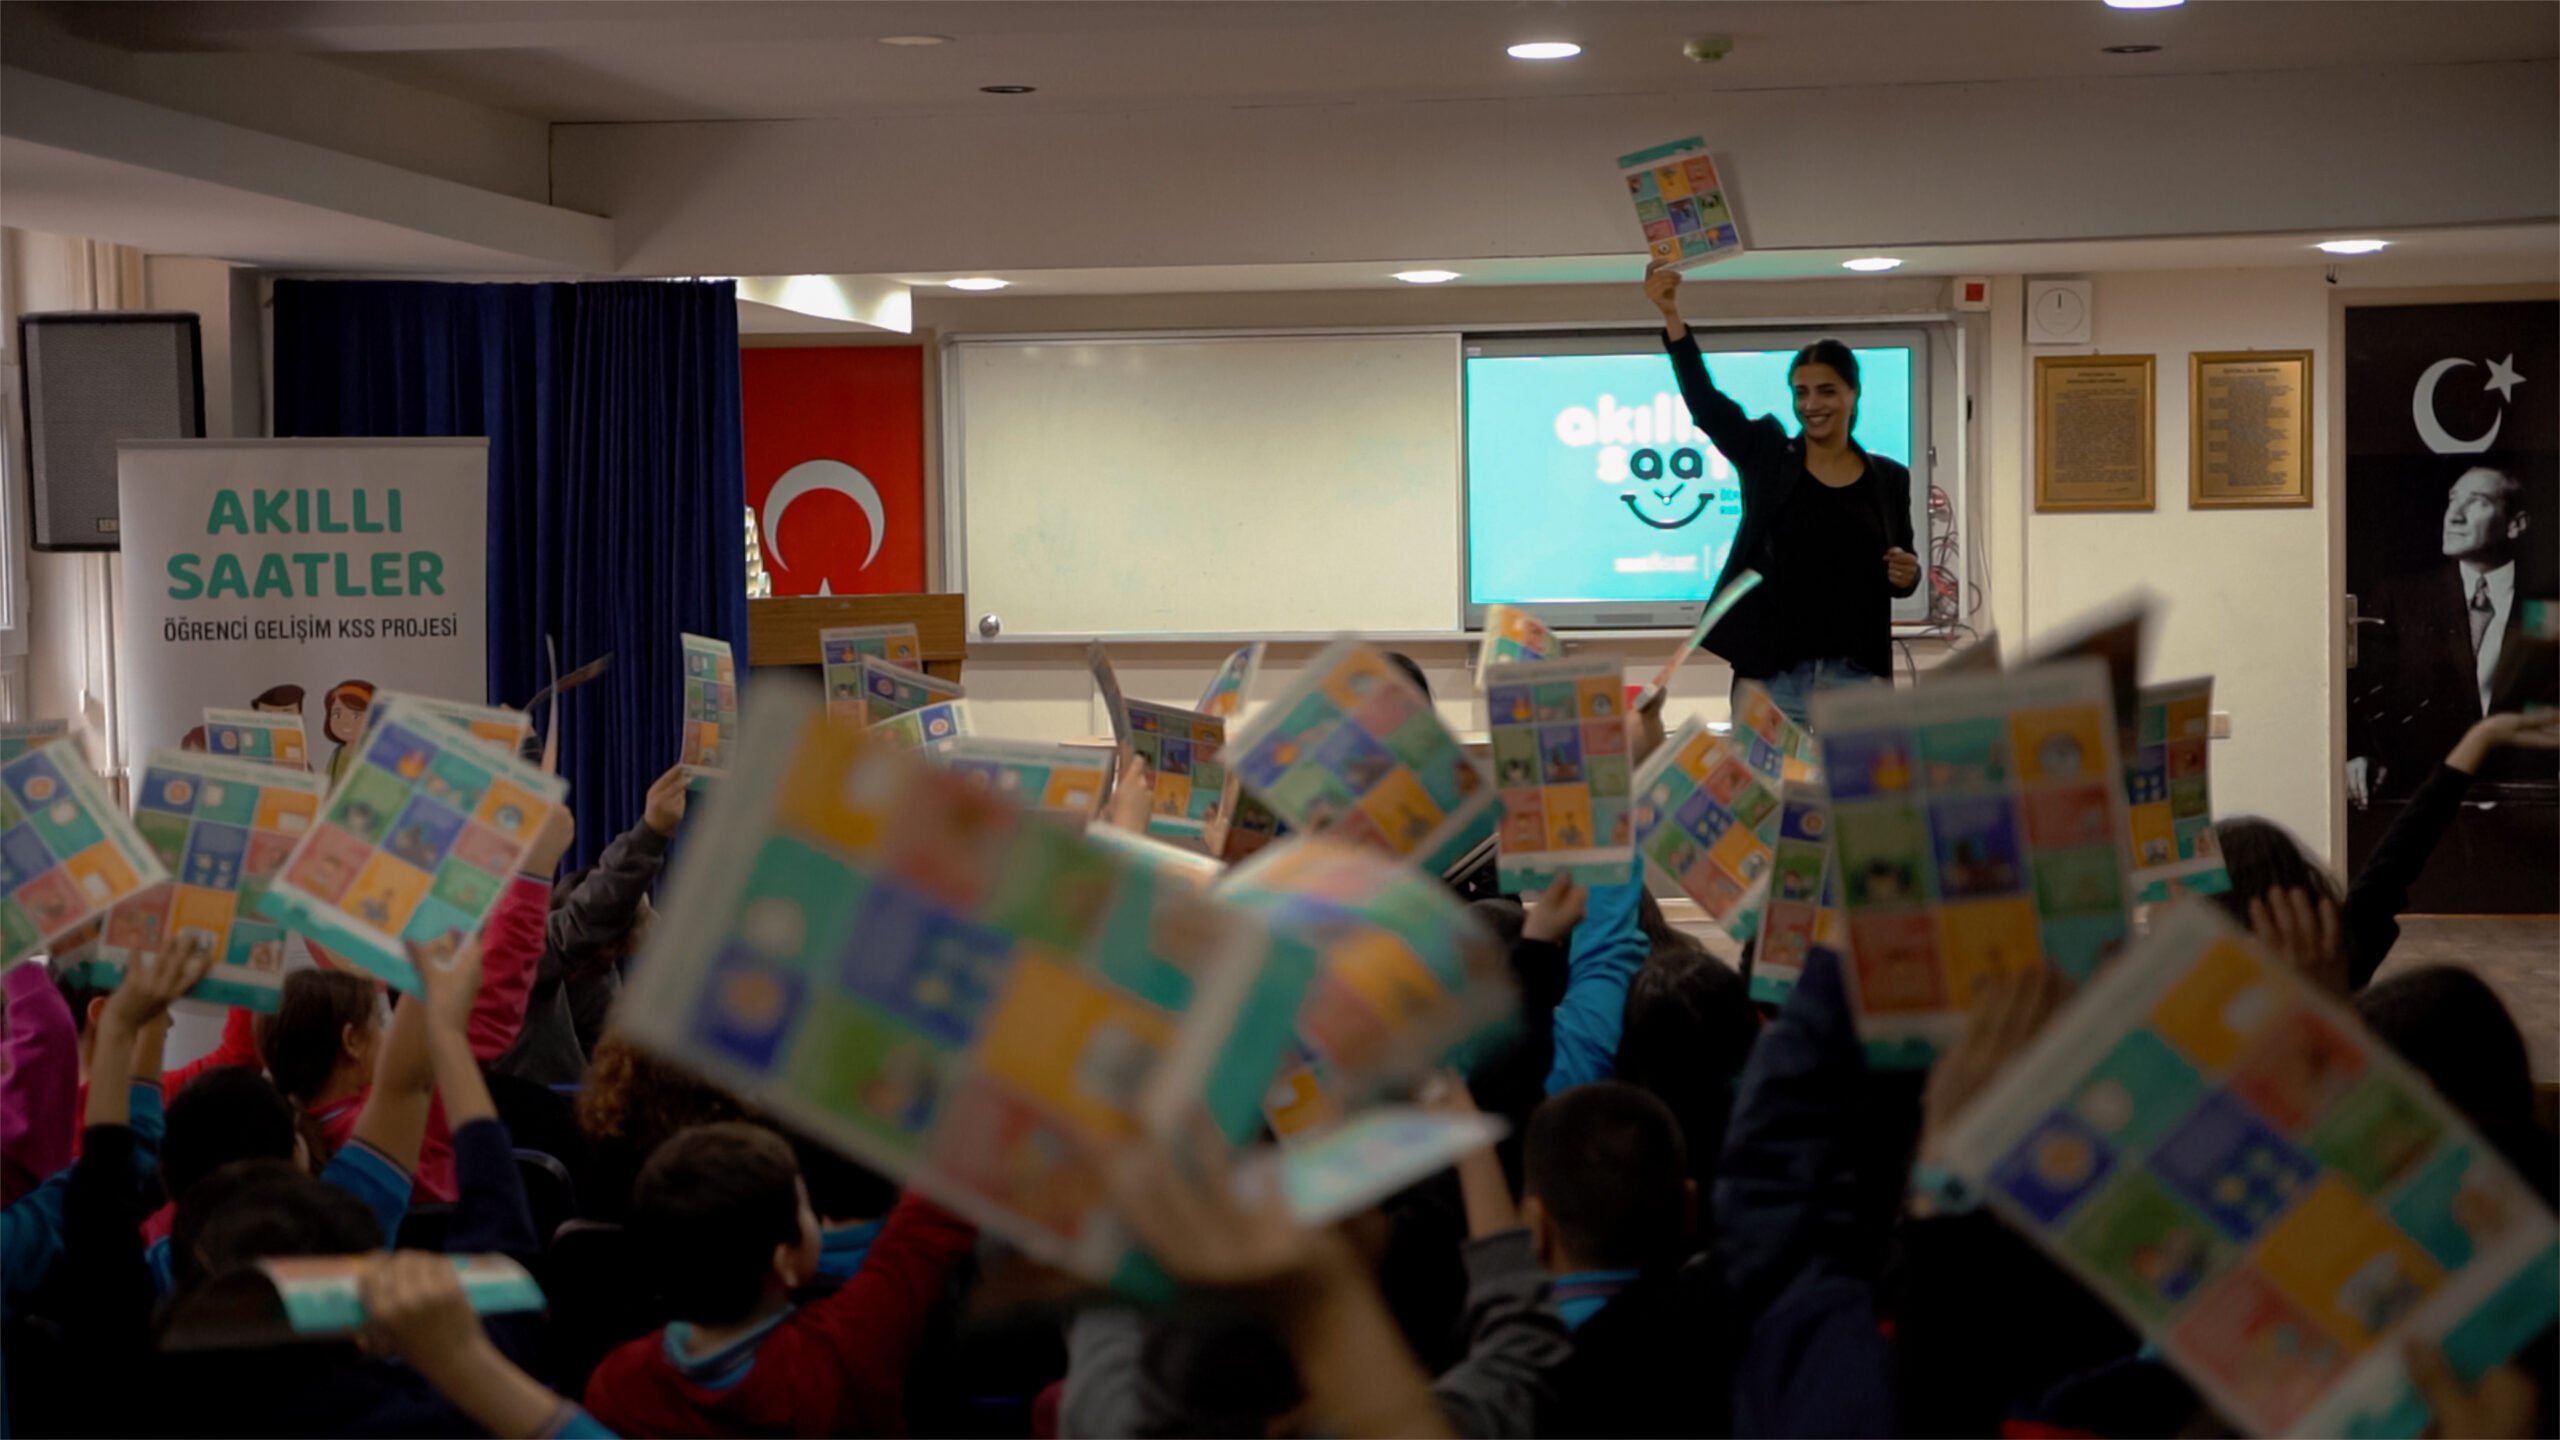 Dünyaca ünlü markaların Türkiye’deki tek yetkili distribütörü Saat&Saat, çocukların gelişimine katkı sağlamak için çalışmalarına devam ediyor!